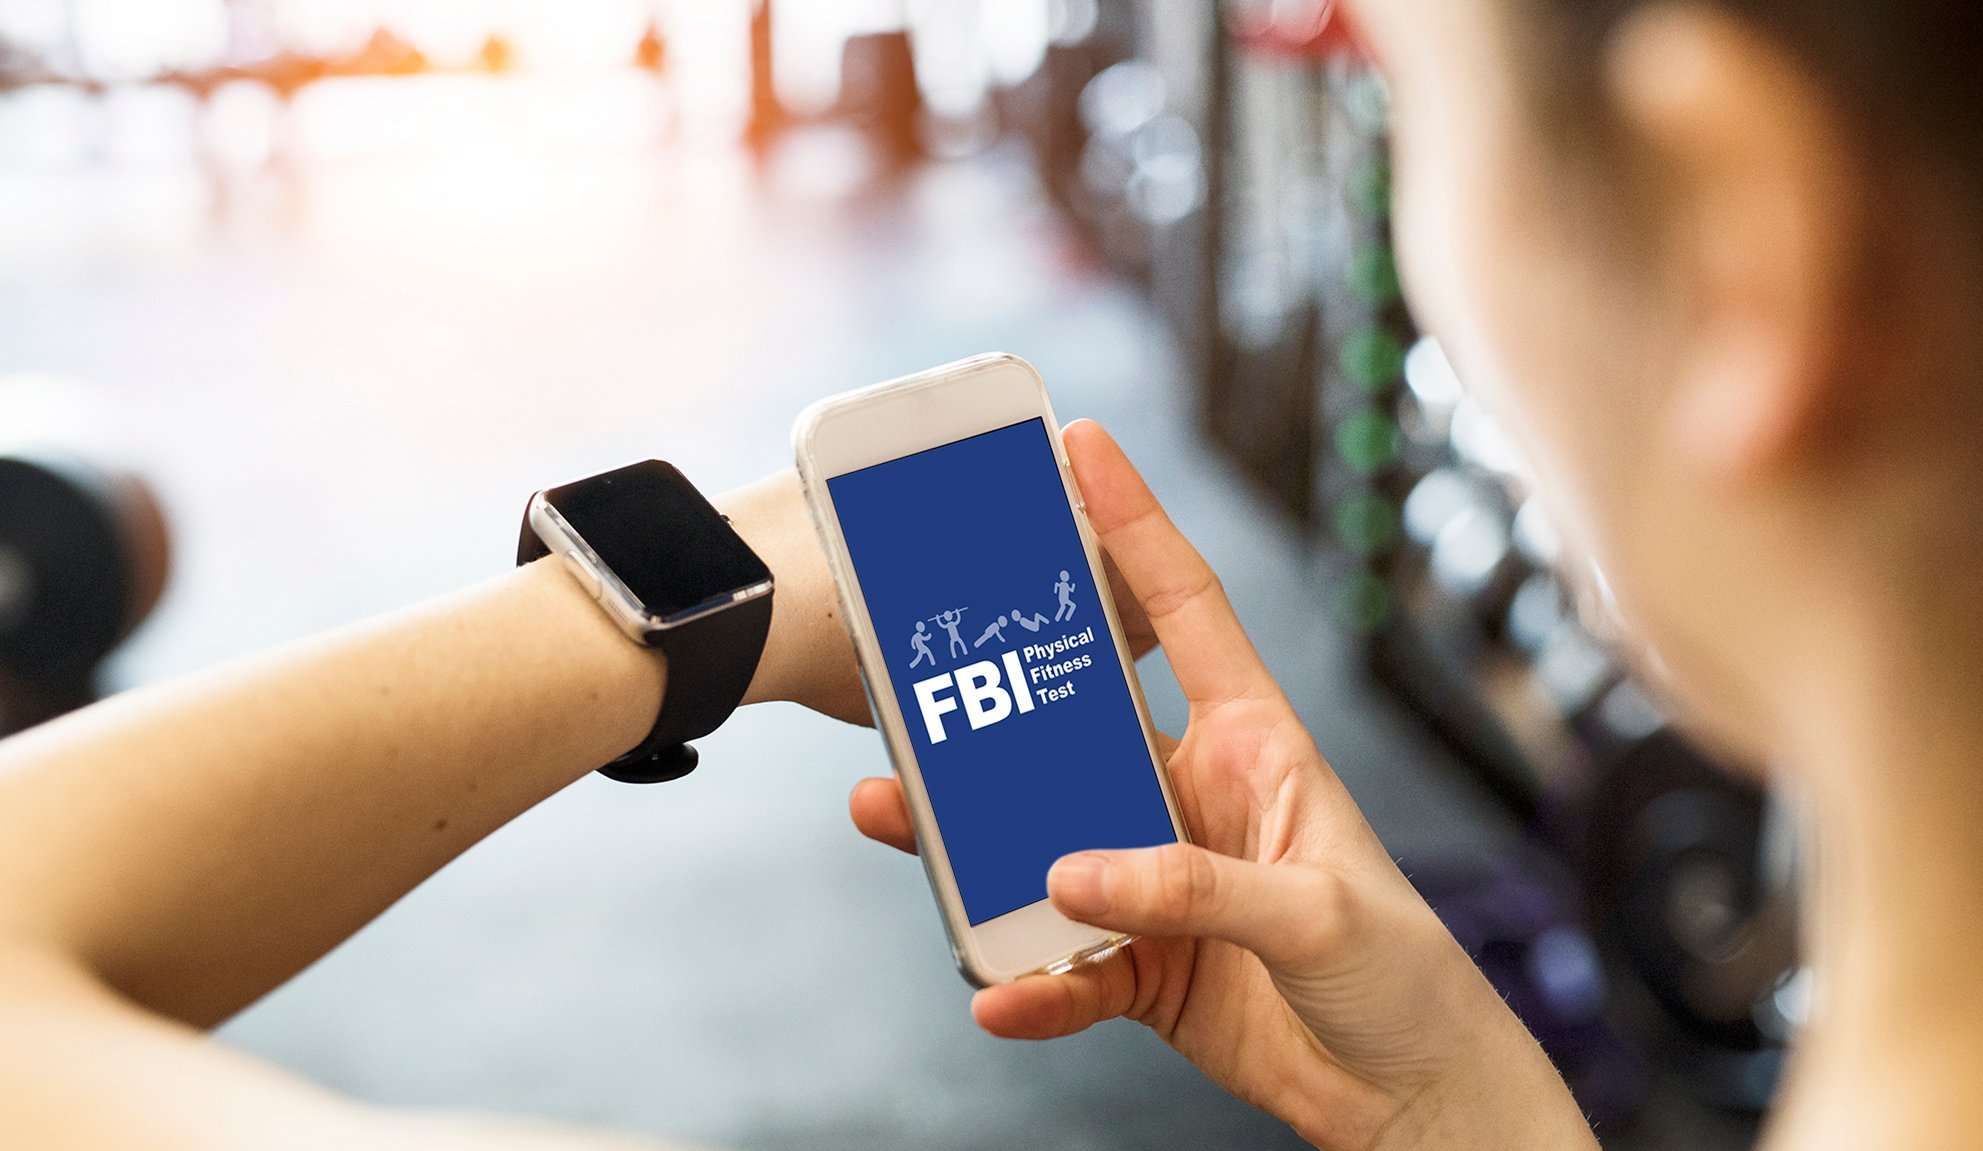 fbi-physical-fitness-test-app-fbi